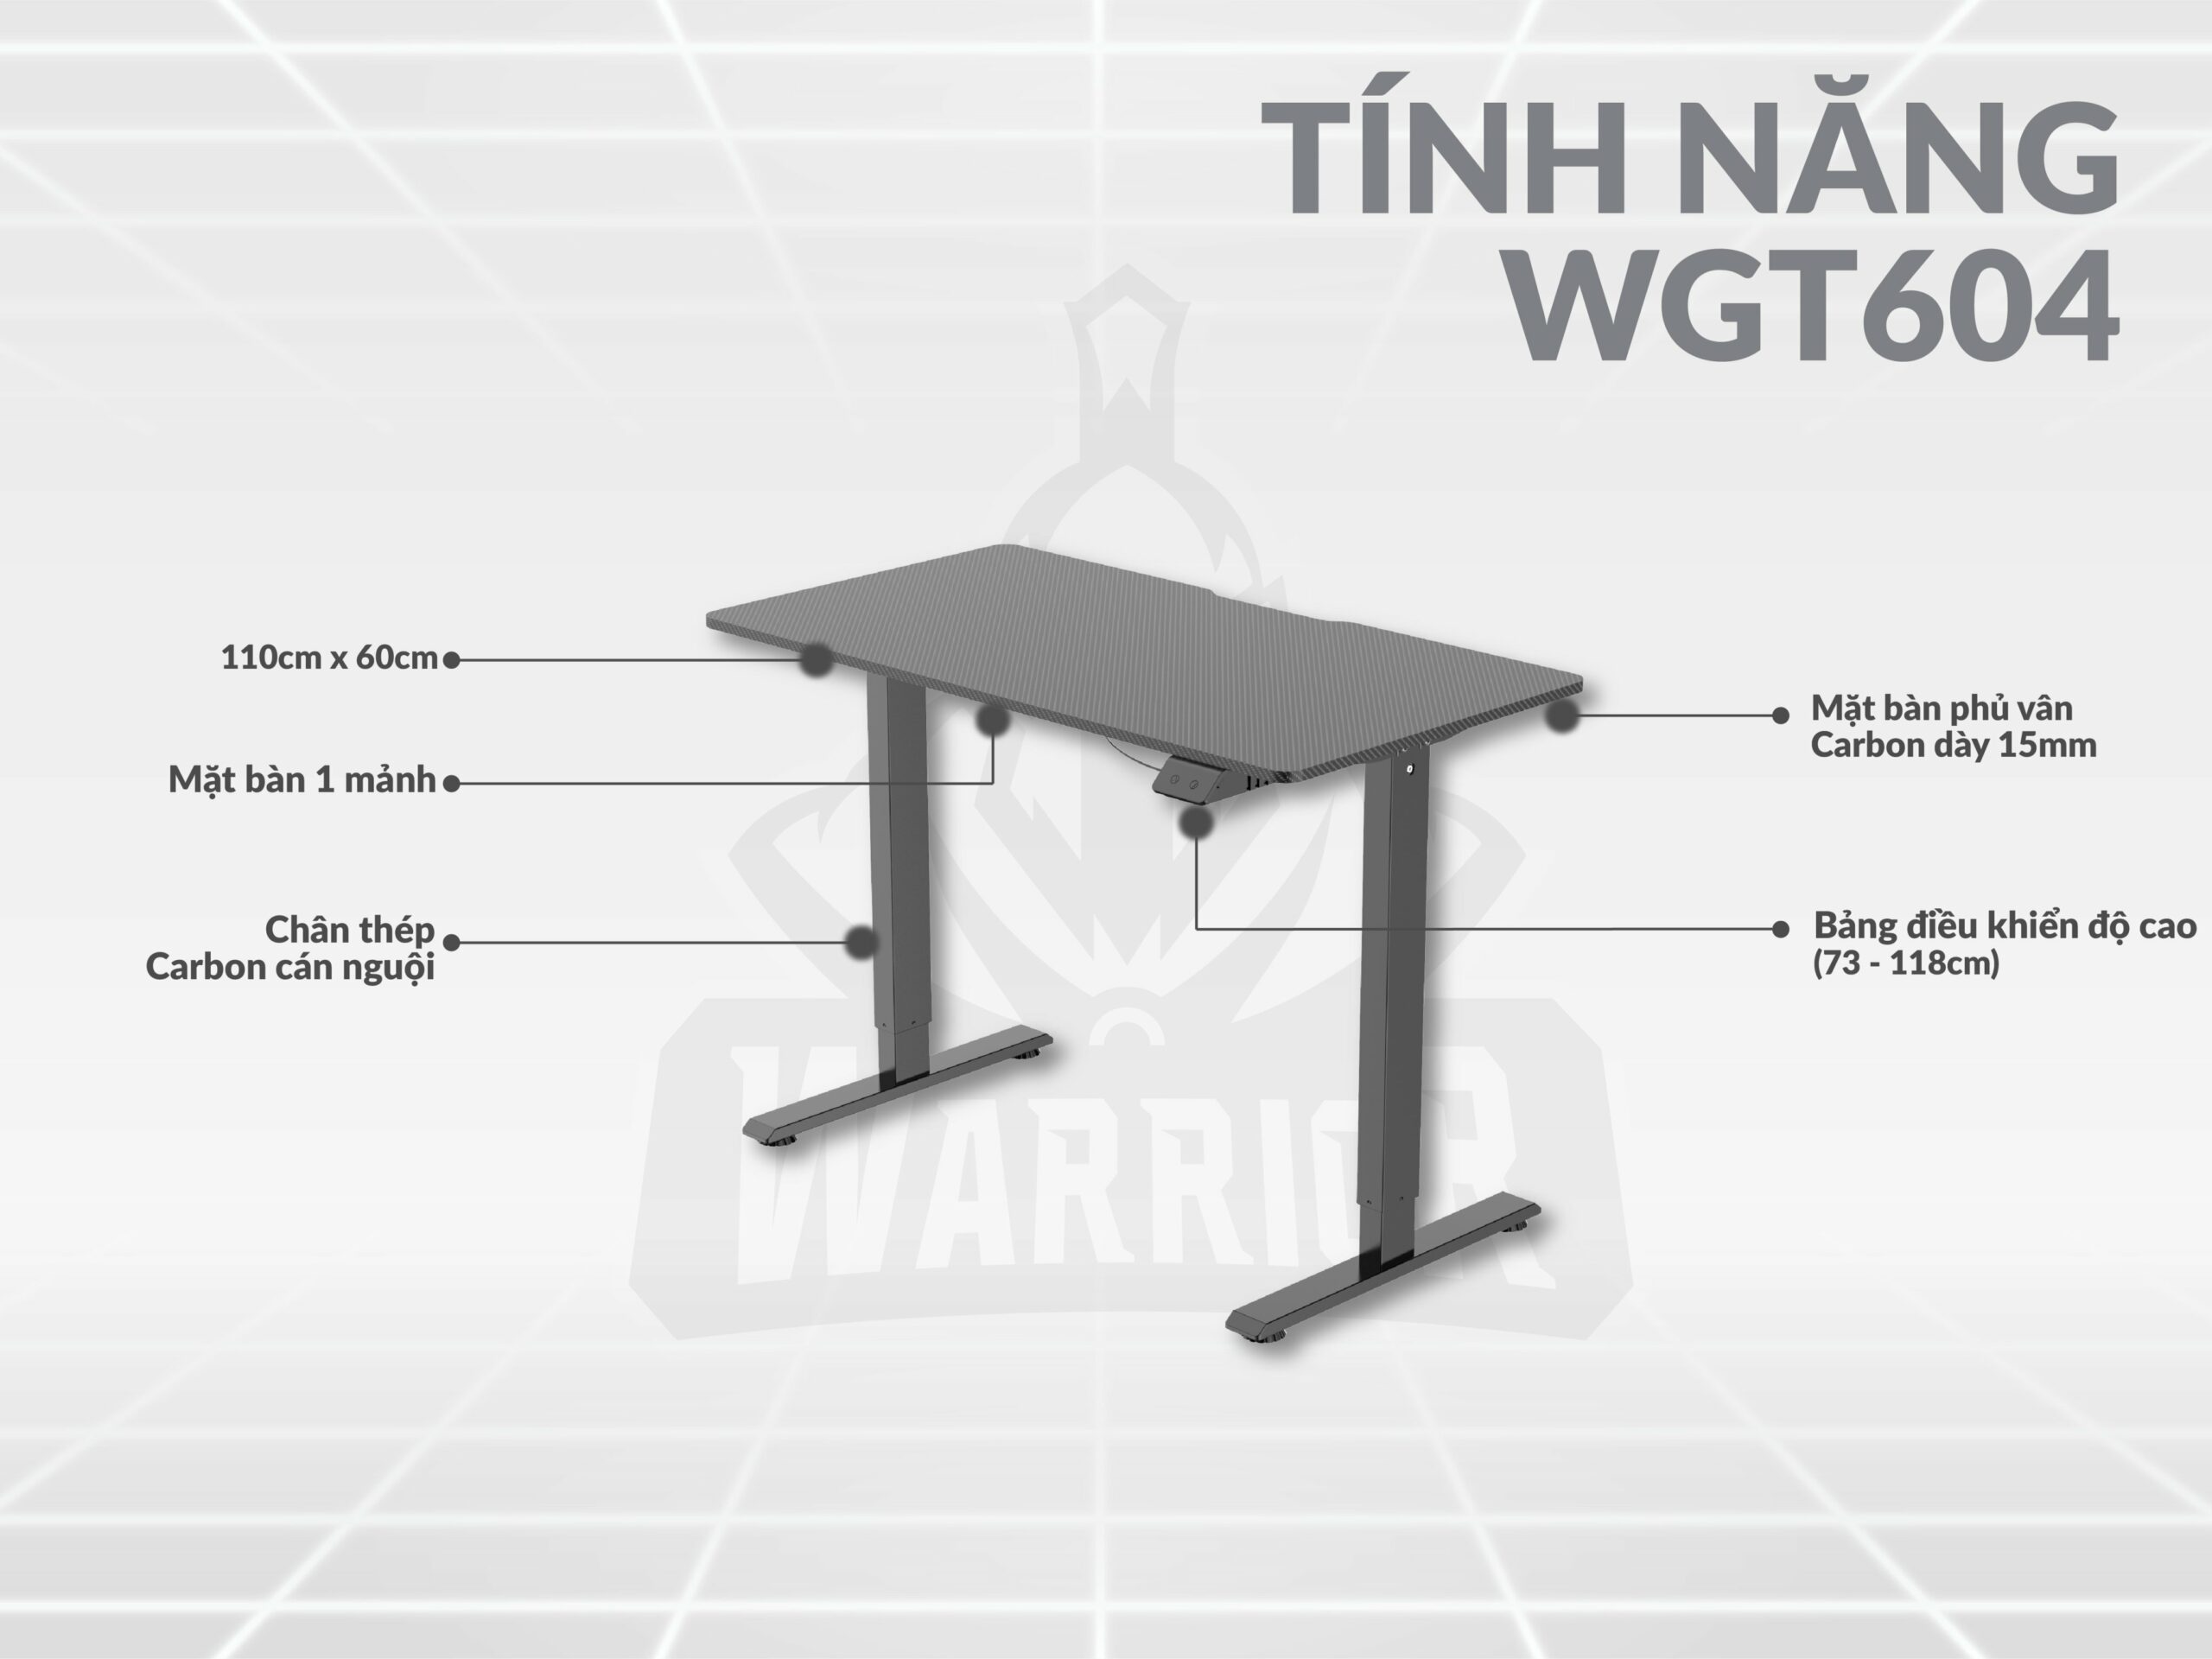 Tính năng của bàn nâng hạ WARRIOR WGT604